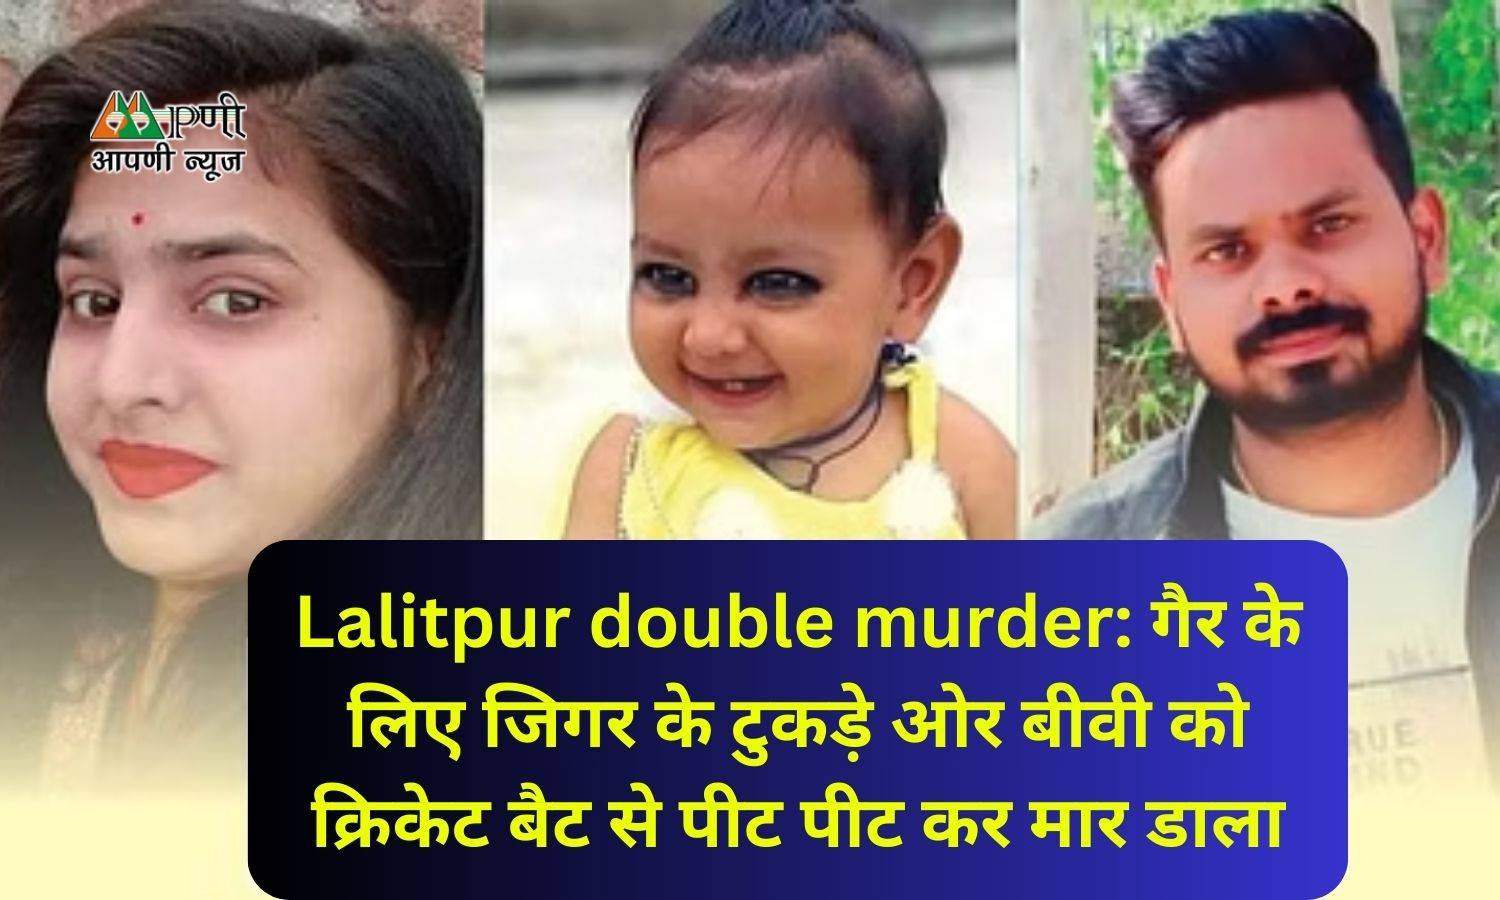 Lalitpur double murder: गैर के लिए जिगर के टुकड़े ओर बीवी को क्रिकेट बैट से पीट पीट कर मार डाला